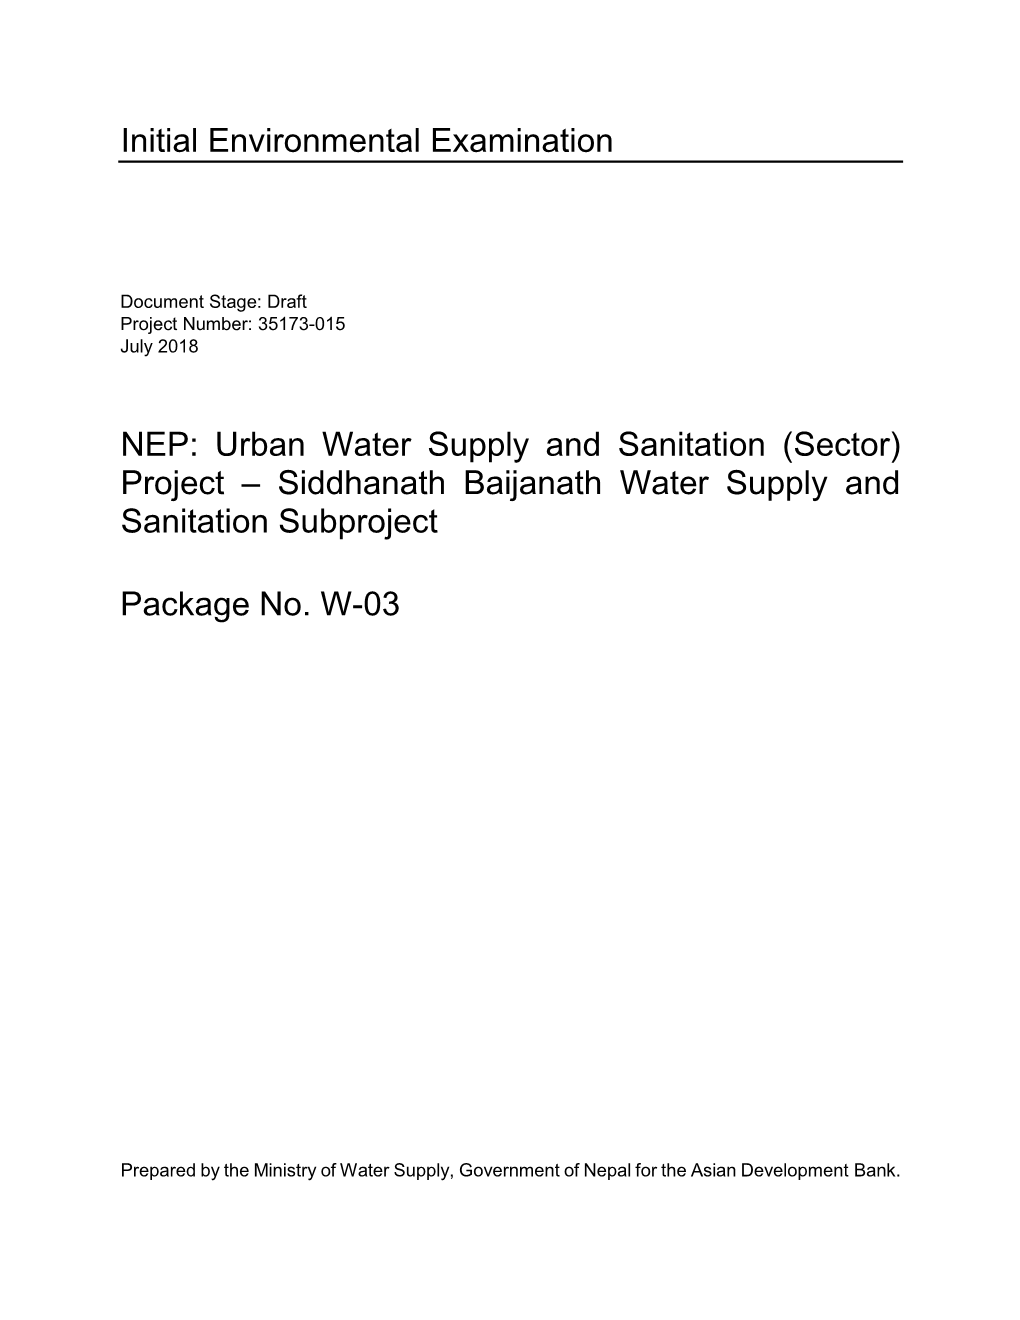 Siddhanath Baijanath Water Supply and Sanitation Subproject